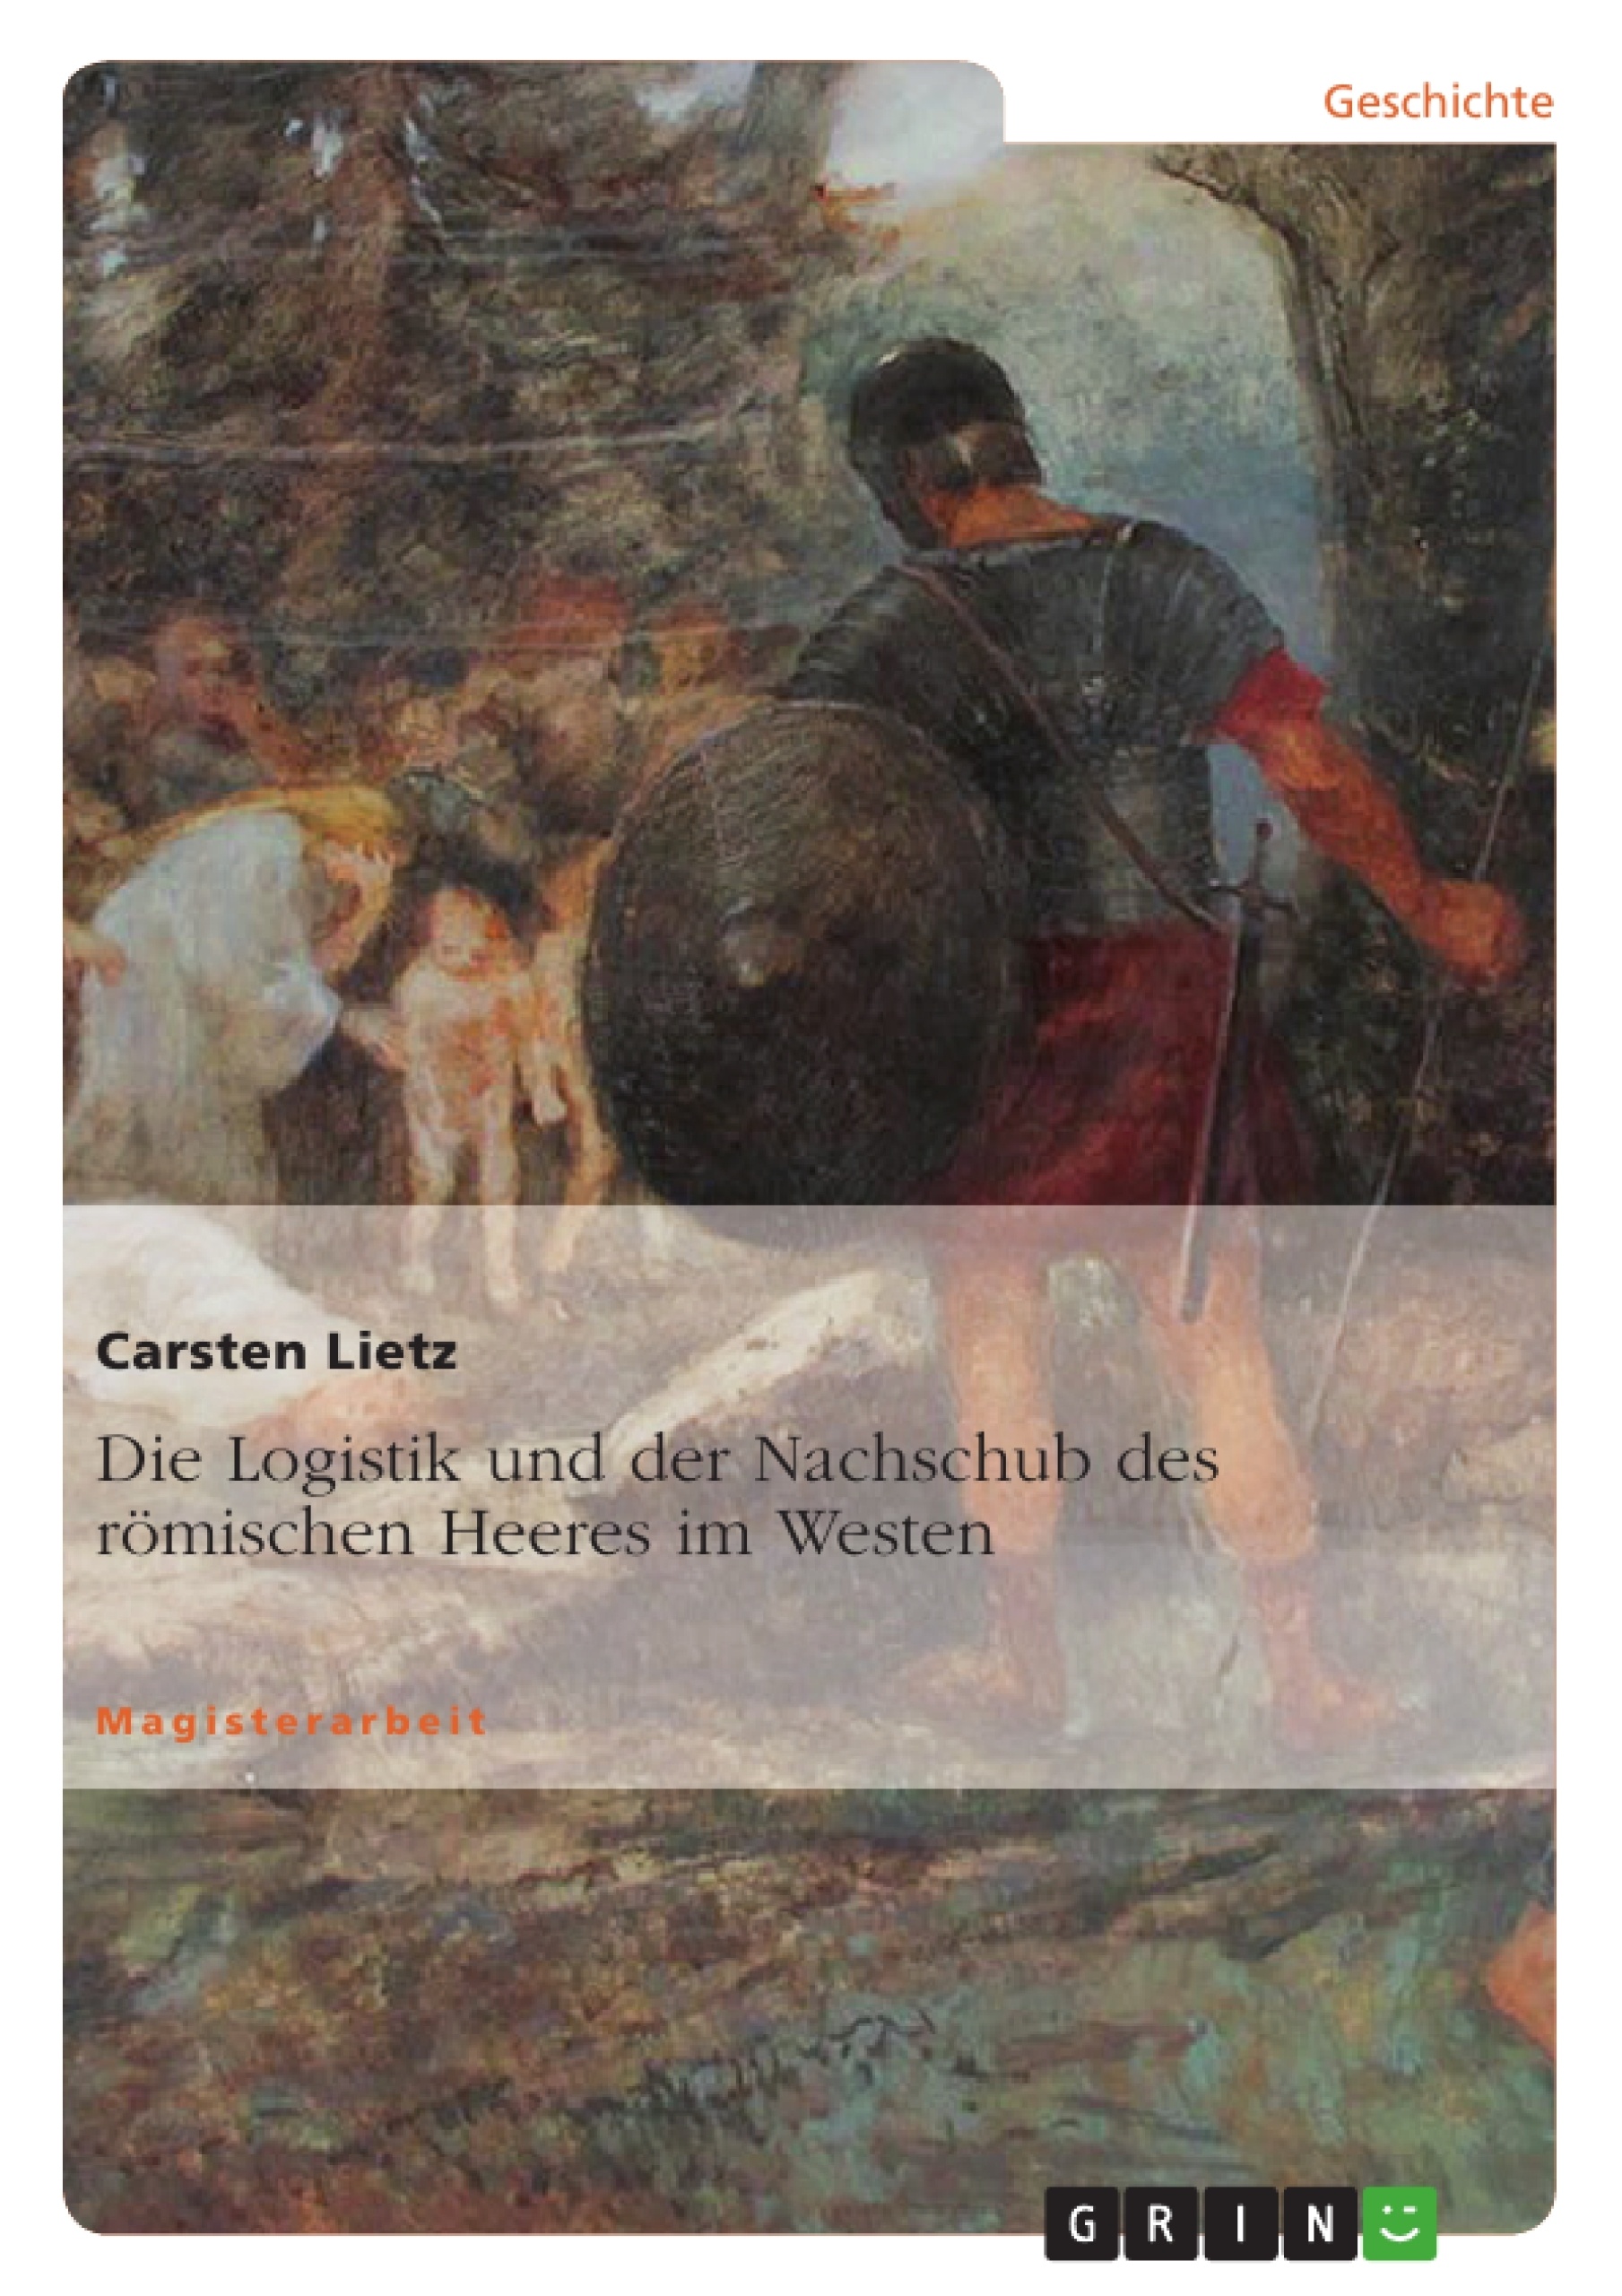 Title: Die Logistik und der Nachschub des römischen Heeres im Westen